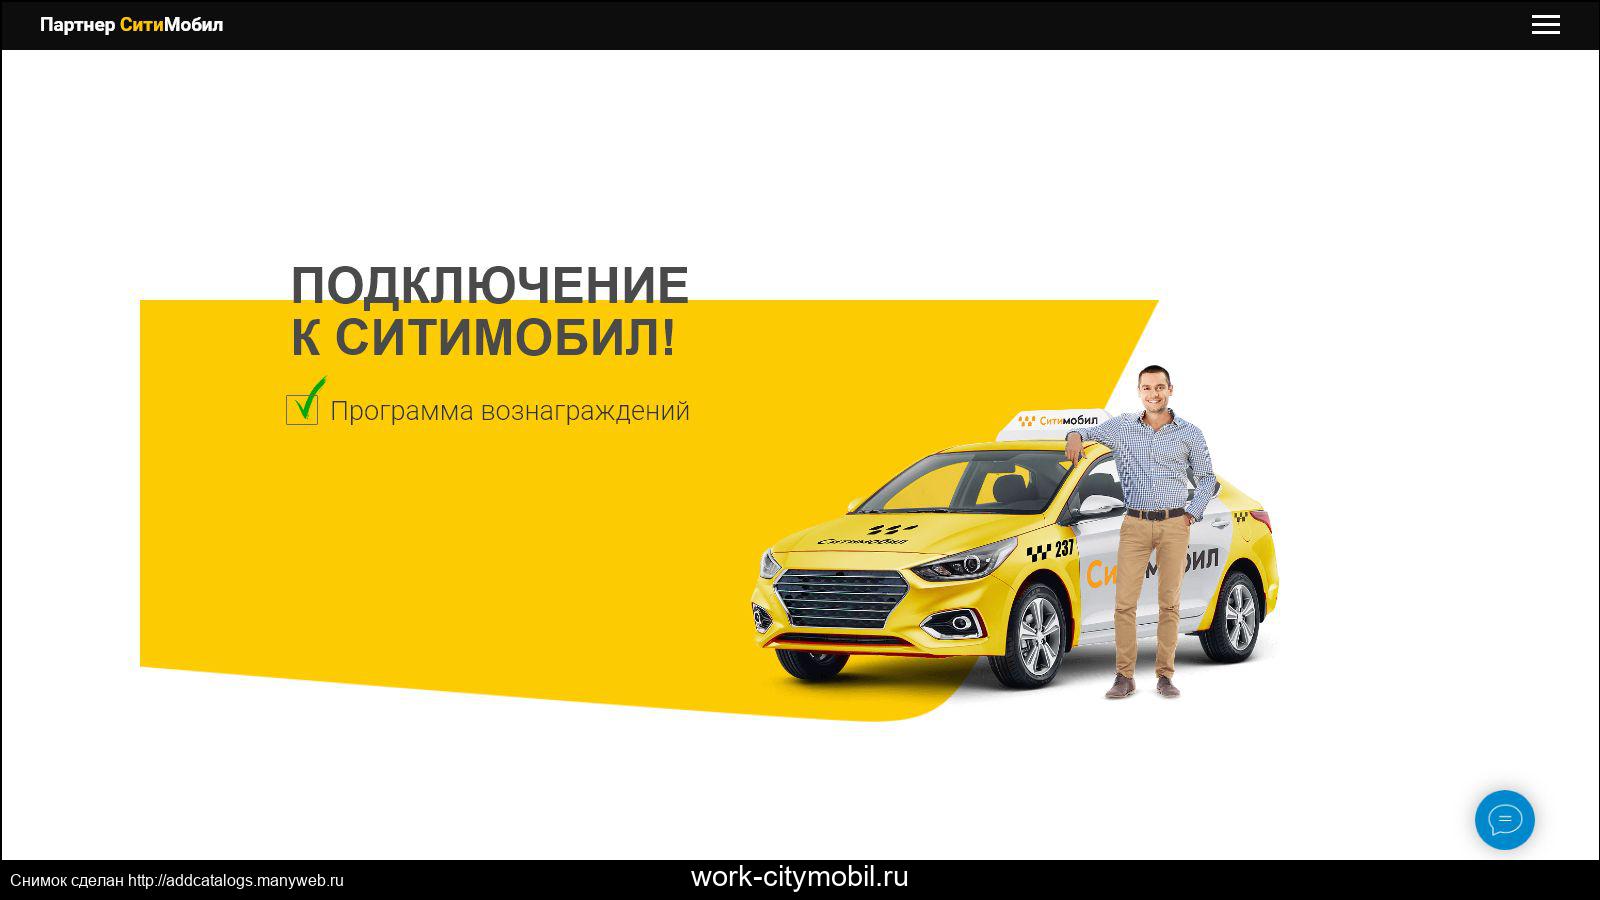 Как работают агрегаторы такси в россии? обзор-сравнение 6 популярных сервисов для водителей